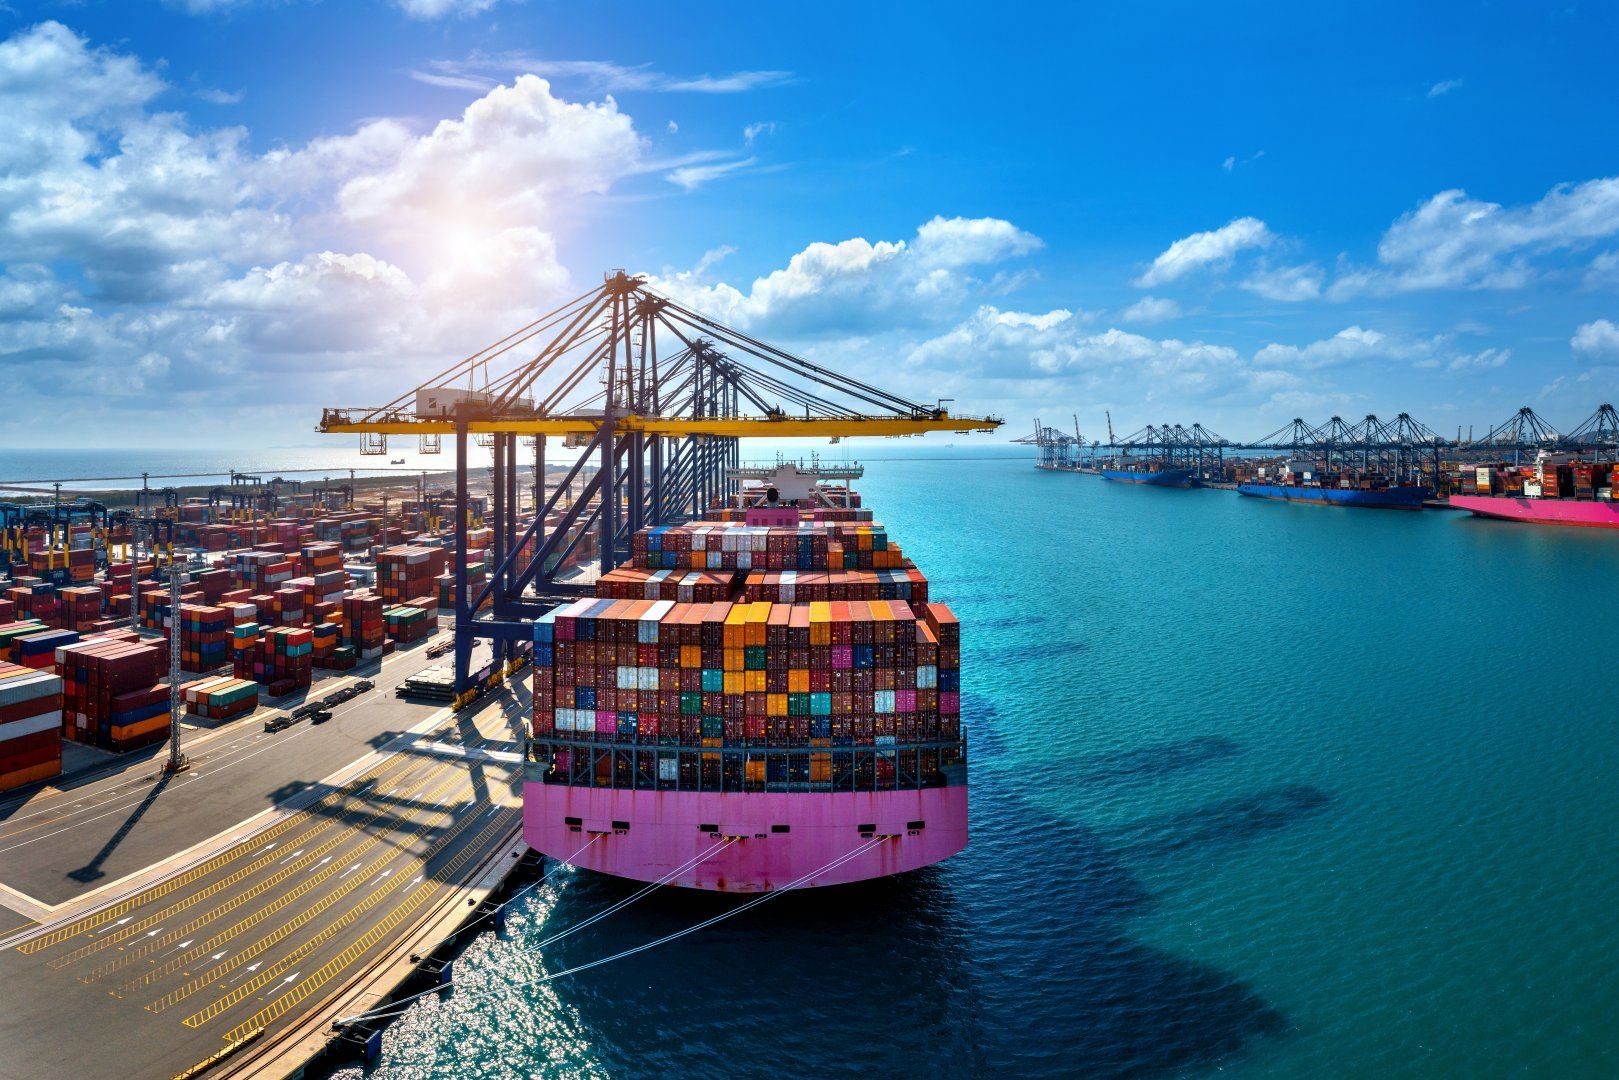 Türkiye names volume of cargo handled via local ports from Kazakhstan for 8M2022